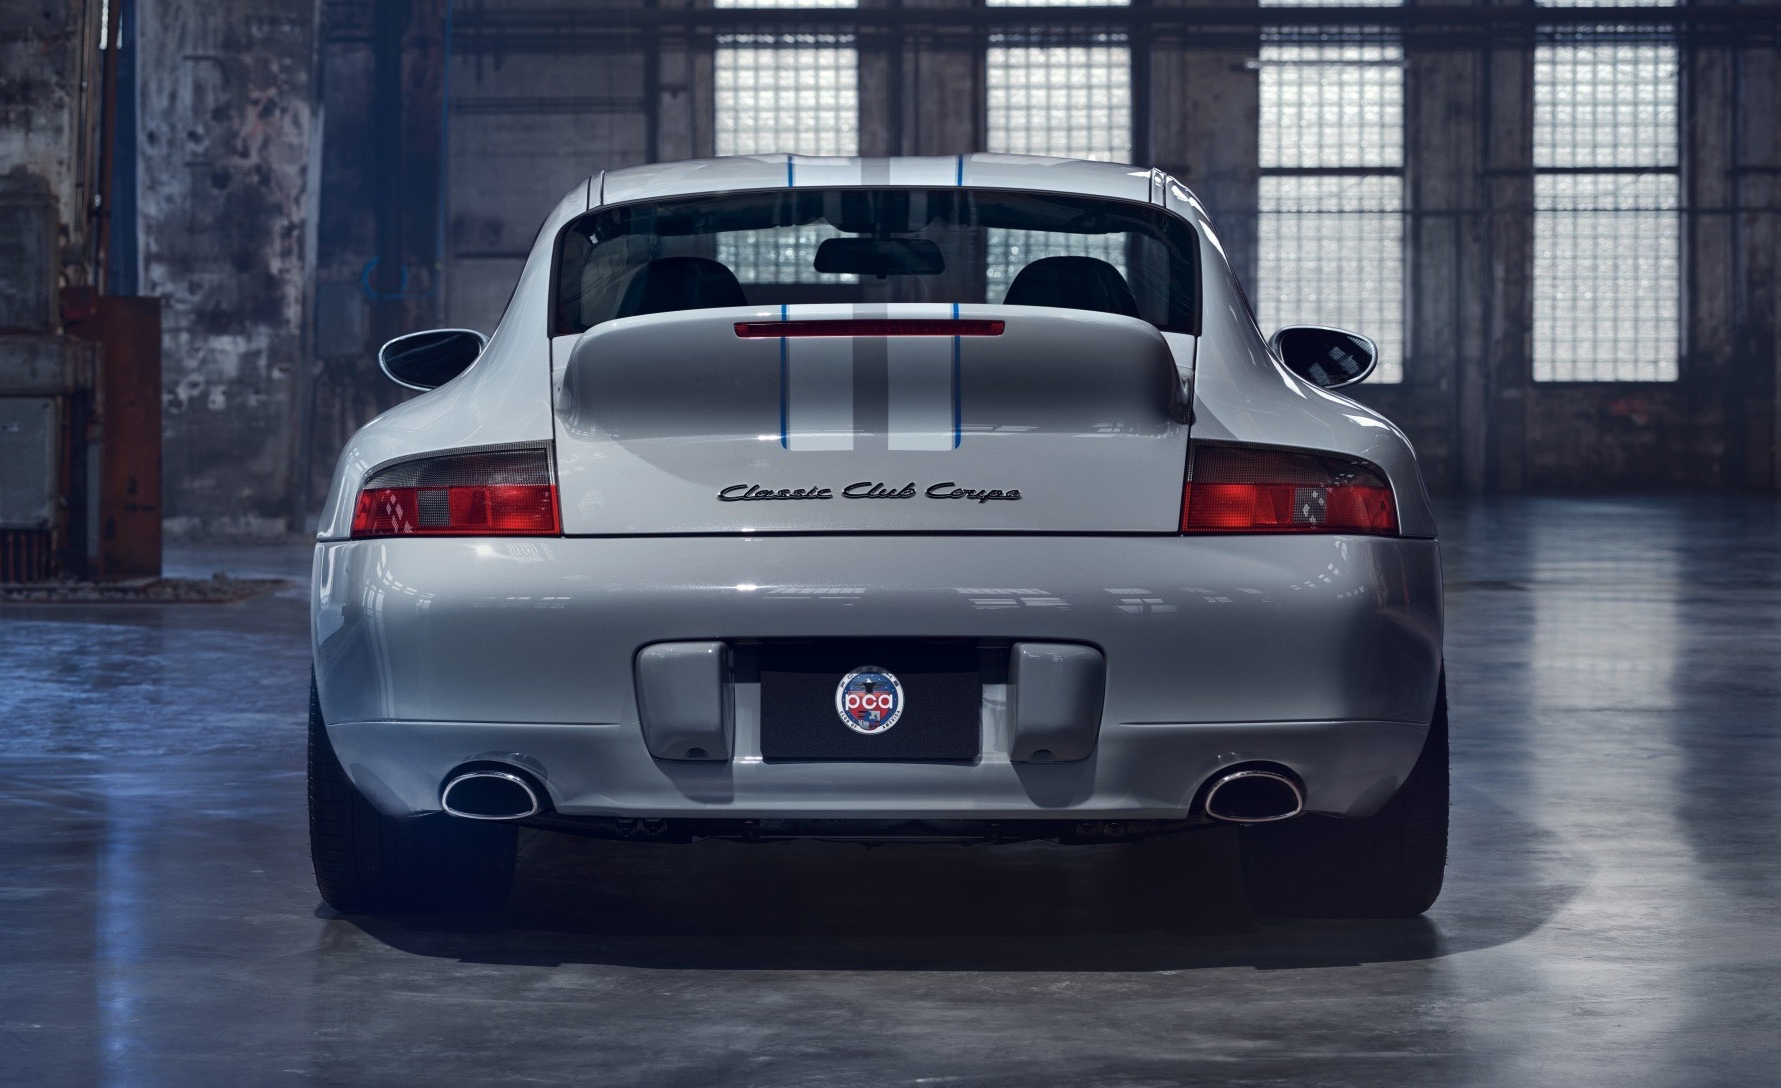 Porsche 911 Classic Club Coupe - SoyMotor.com